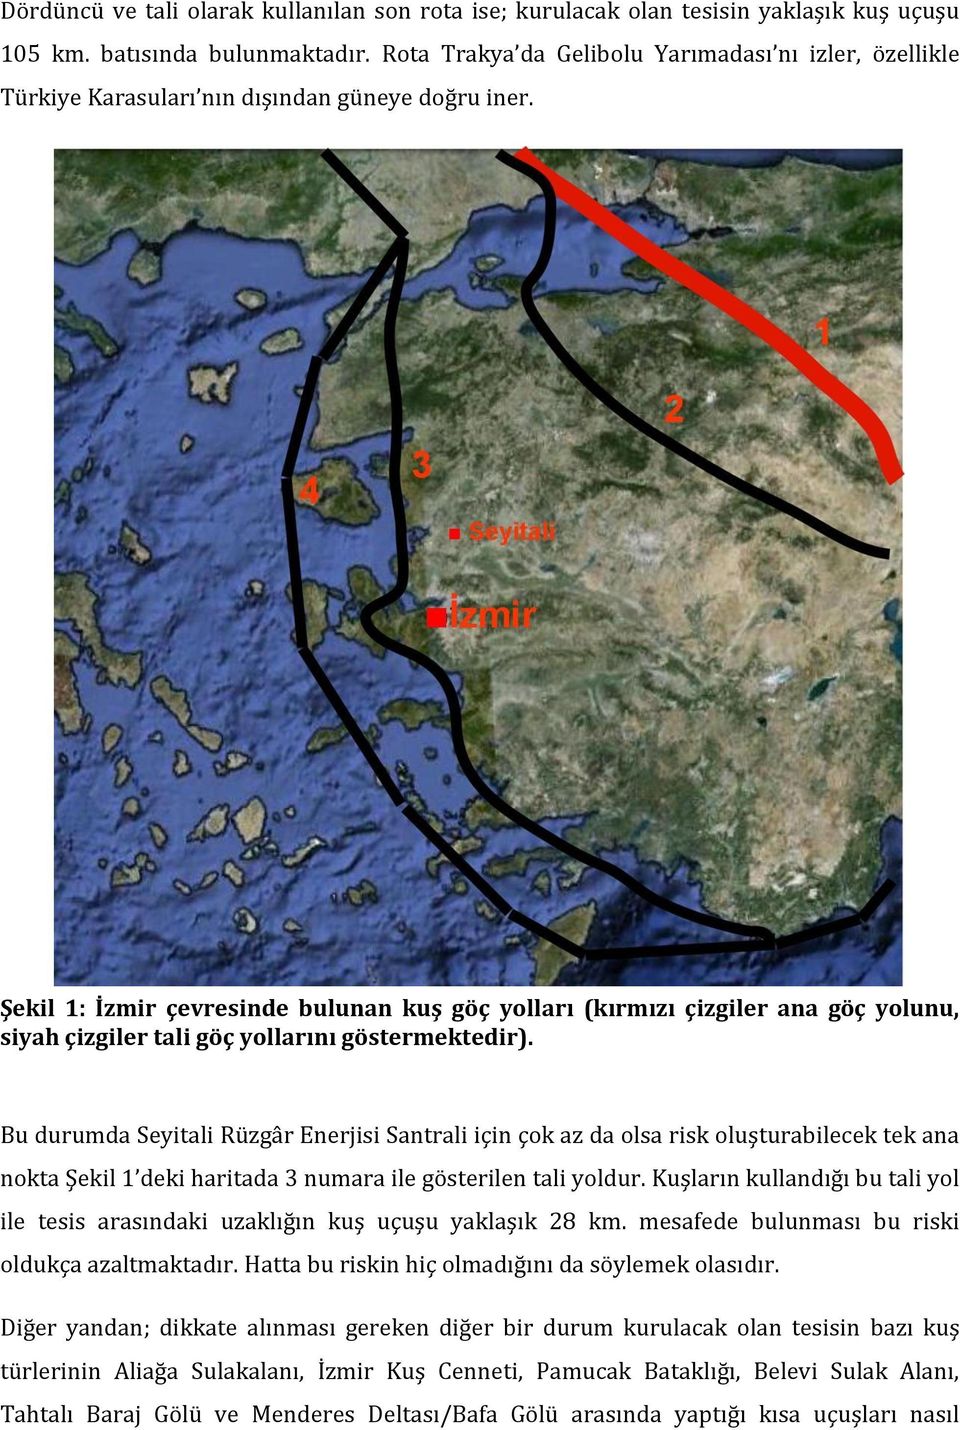 Şekil 1: İzmir çevresinde bulunan kuş göç yolları (kırmızı çizgiler ana göç yolunu, siyah çizgiler tali göç yollarını göstermektedir).